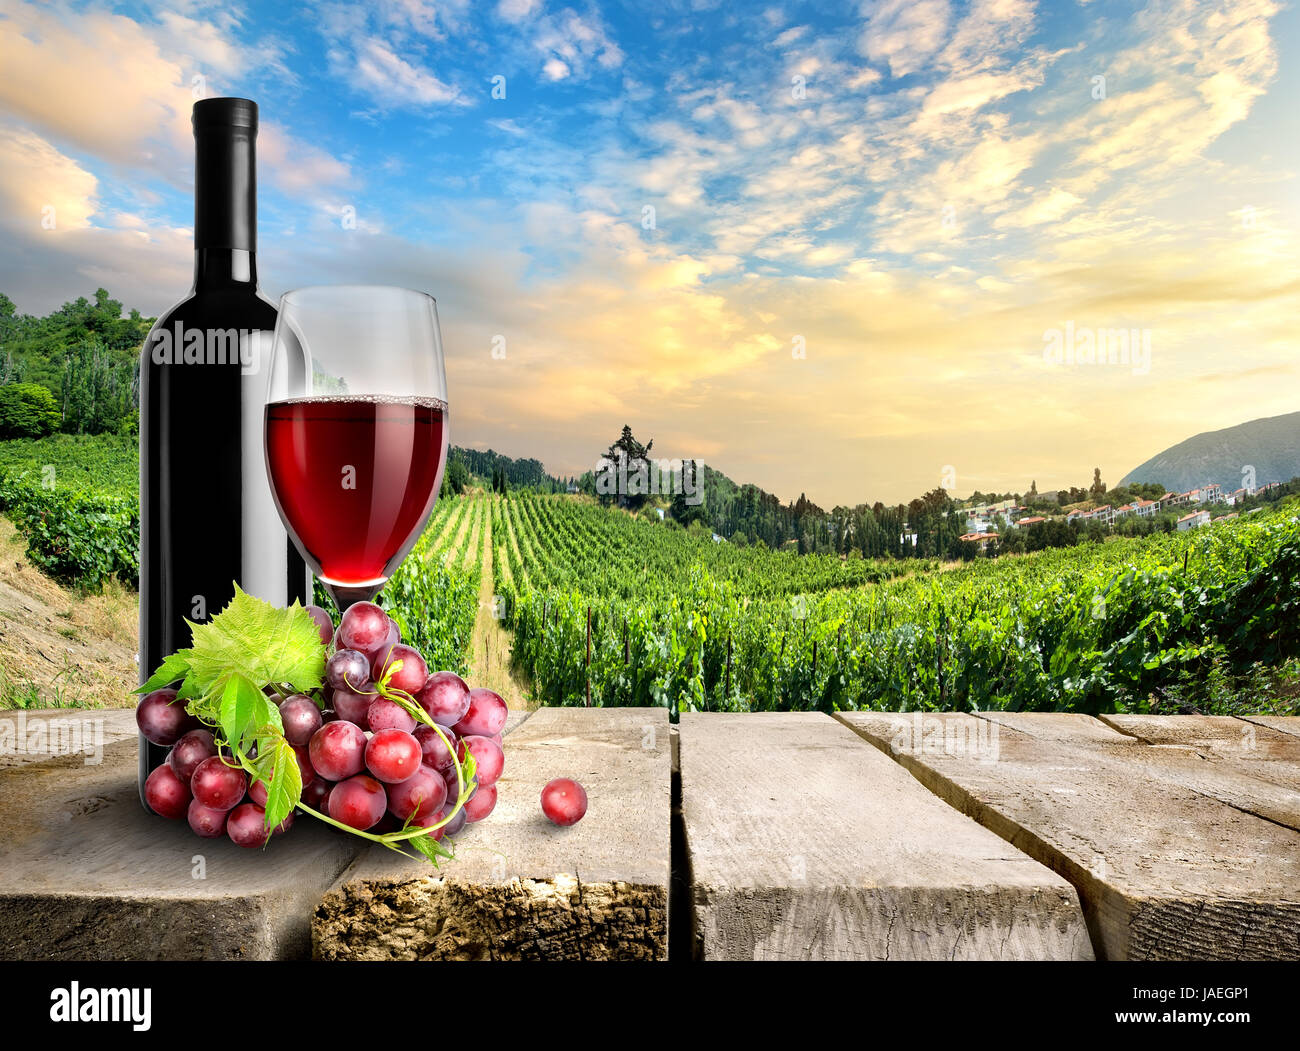 1 мая вино. Виноградники вино. Вино на фоне виноградника. Винодельни и виноградники. Пейзаж вино фрукты.